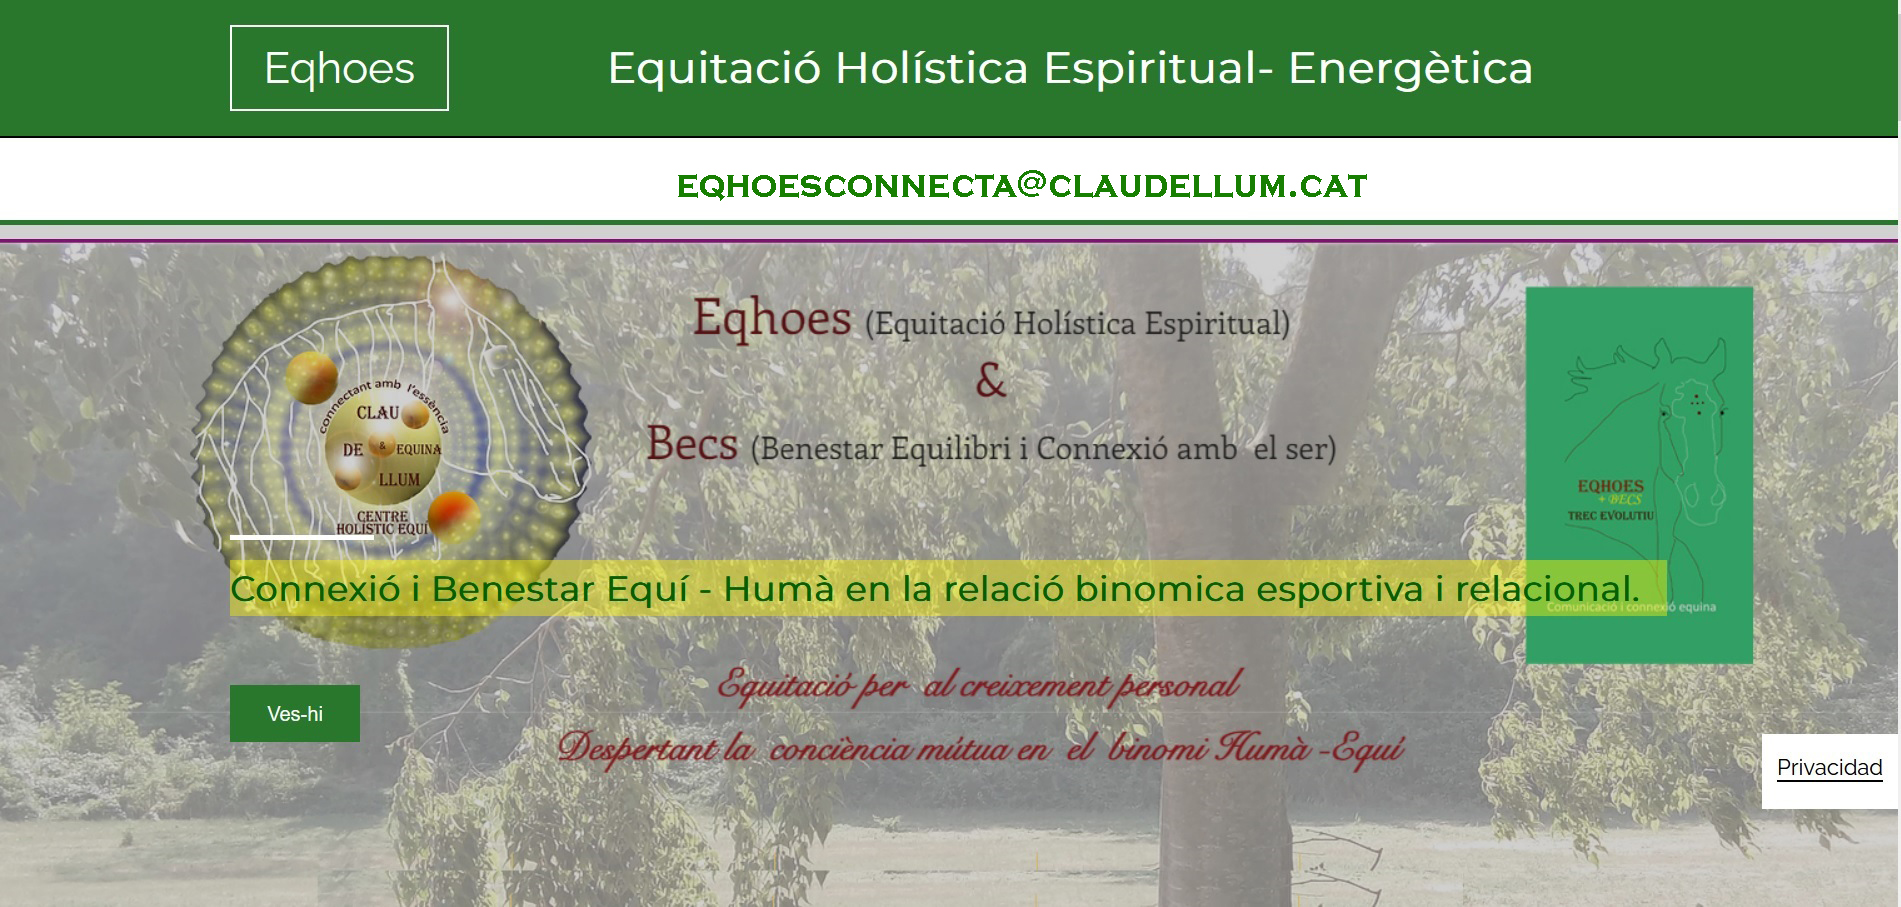 Equitació Holística Energètica-Espiritual